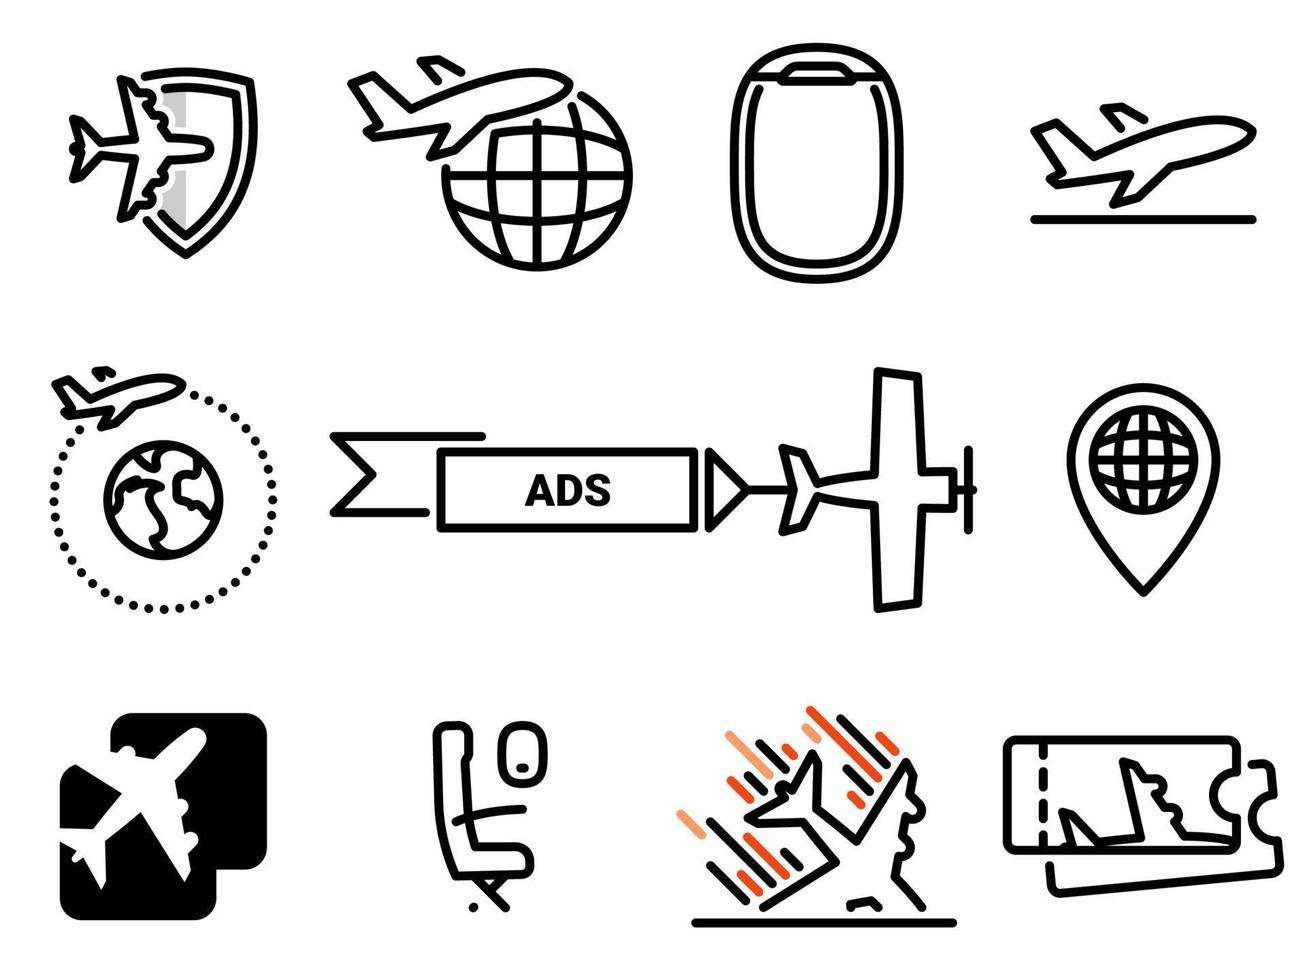 icone vettoriali semplici. illustrazione piatta su un tema trasporto aereo, aereo